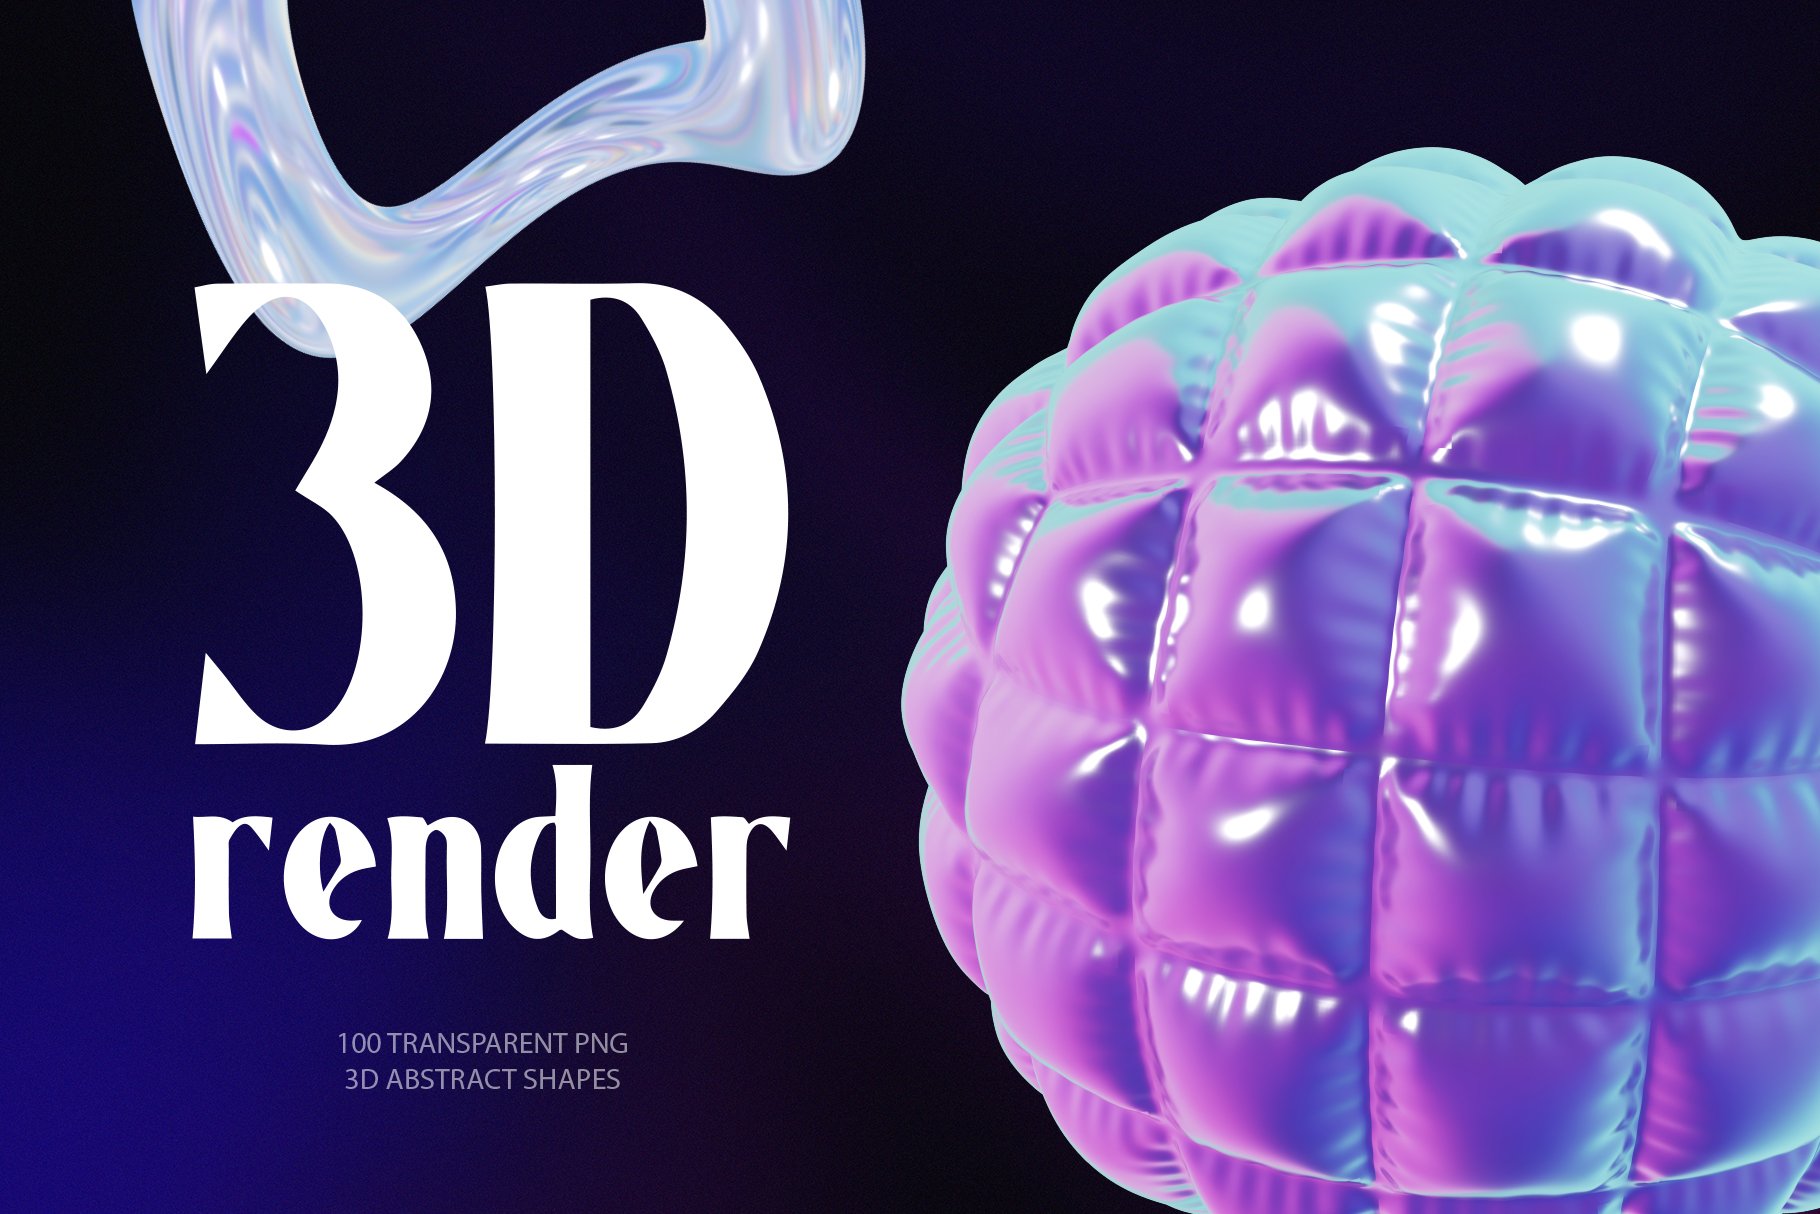 100款全息3D迷幻酸性抽象艺术闪亮PNG设计图形 Holo Iridescence 3D Shapes graphics Vol.2 , 第4张